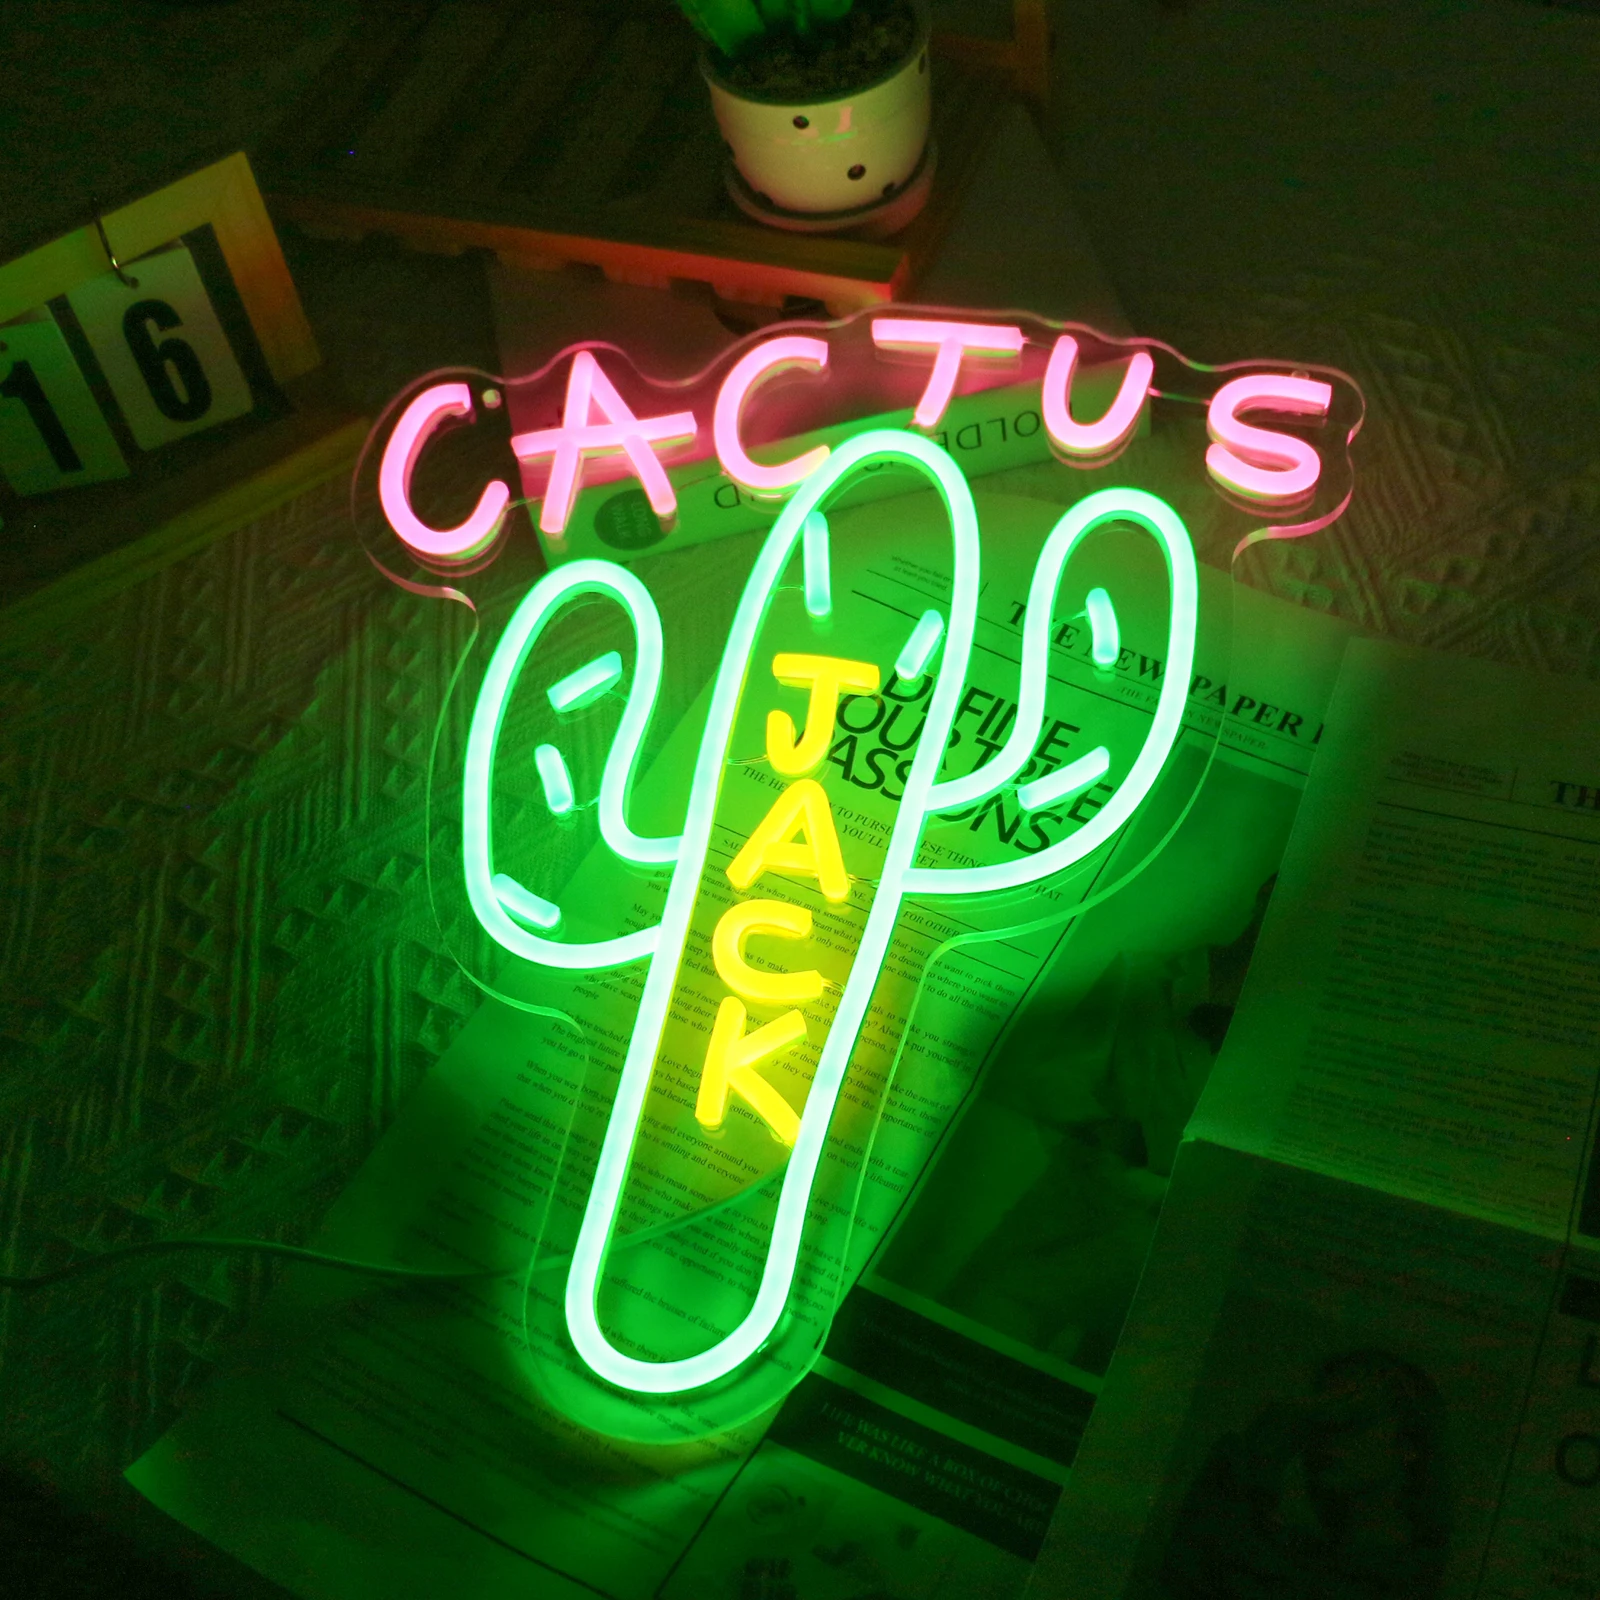 

UponRay Neon Sign Wall Decor Cactus Jack Neon Sign Neon Sign Light Neon Wall Art Neon Sign Rap Talking Home Bar Pub Party Decor